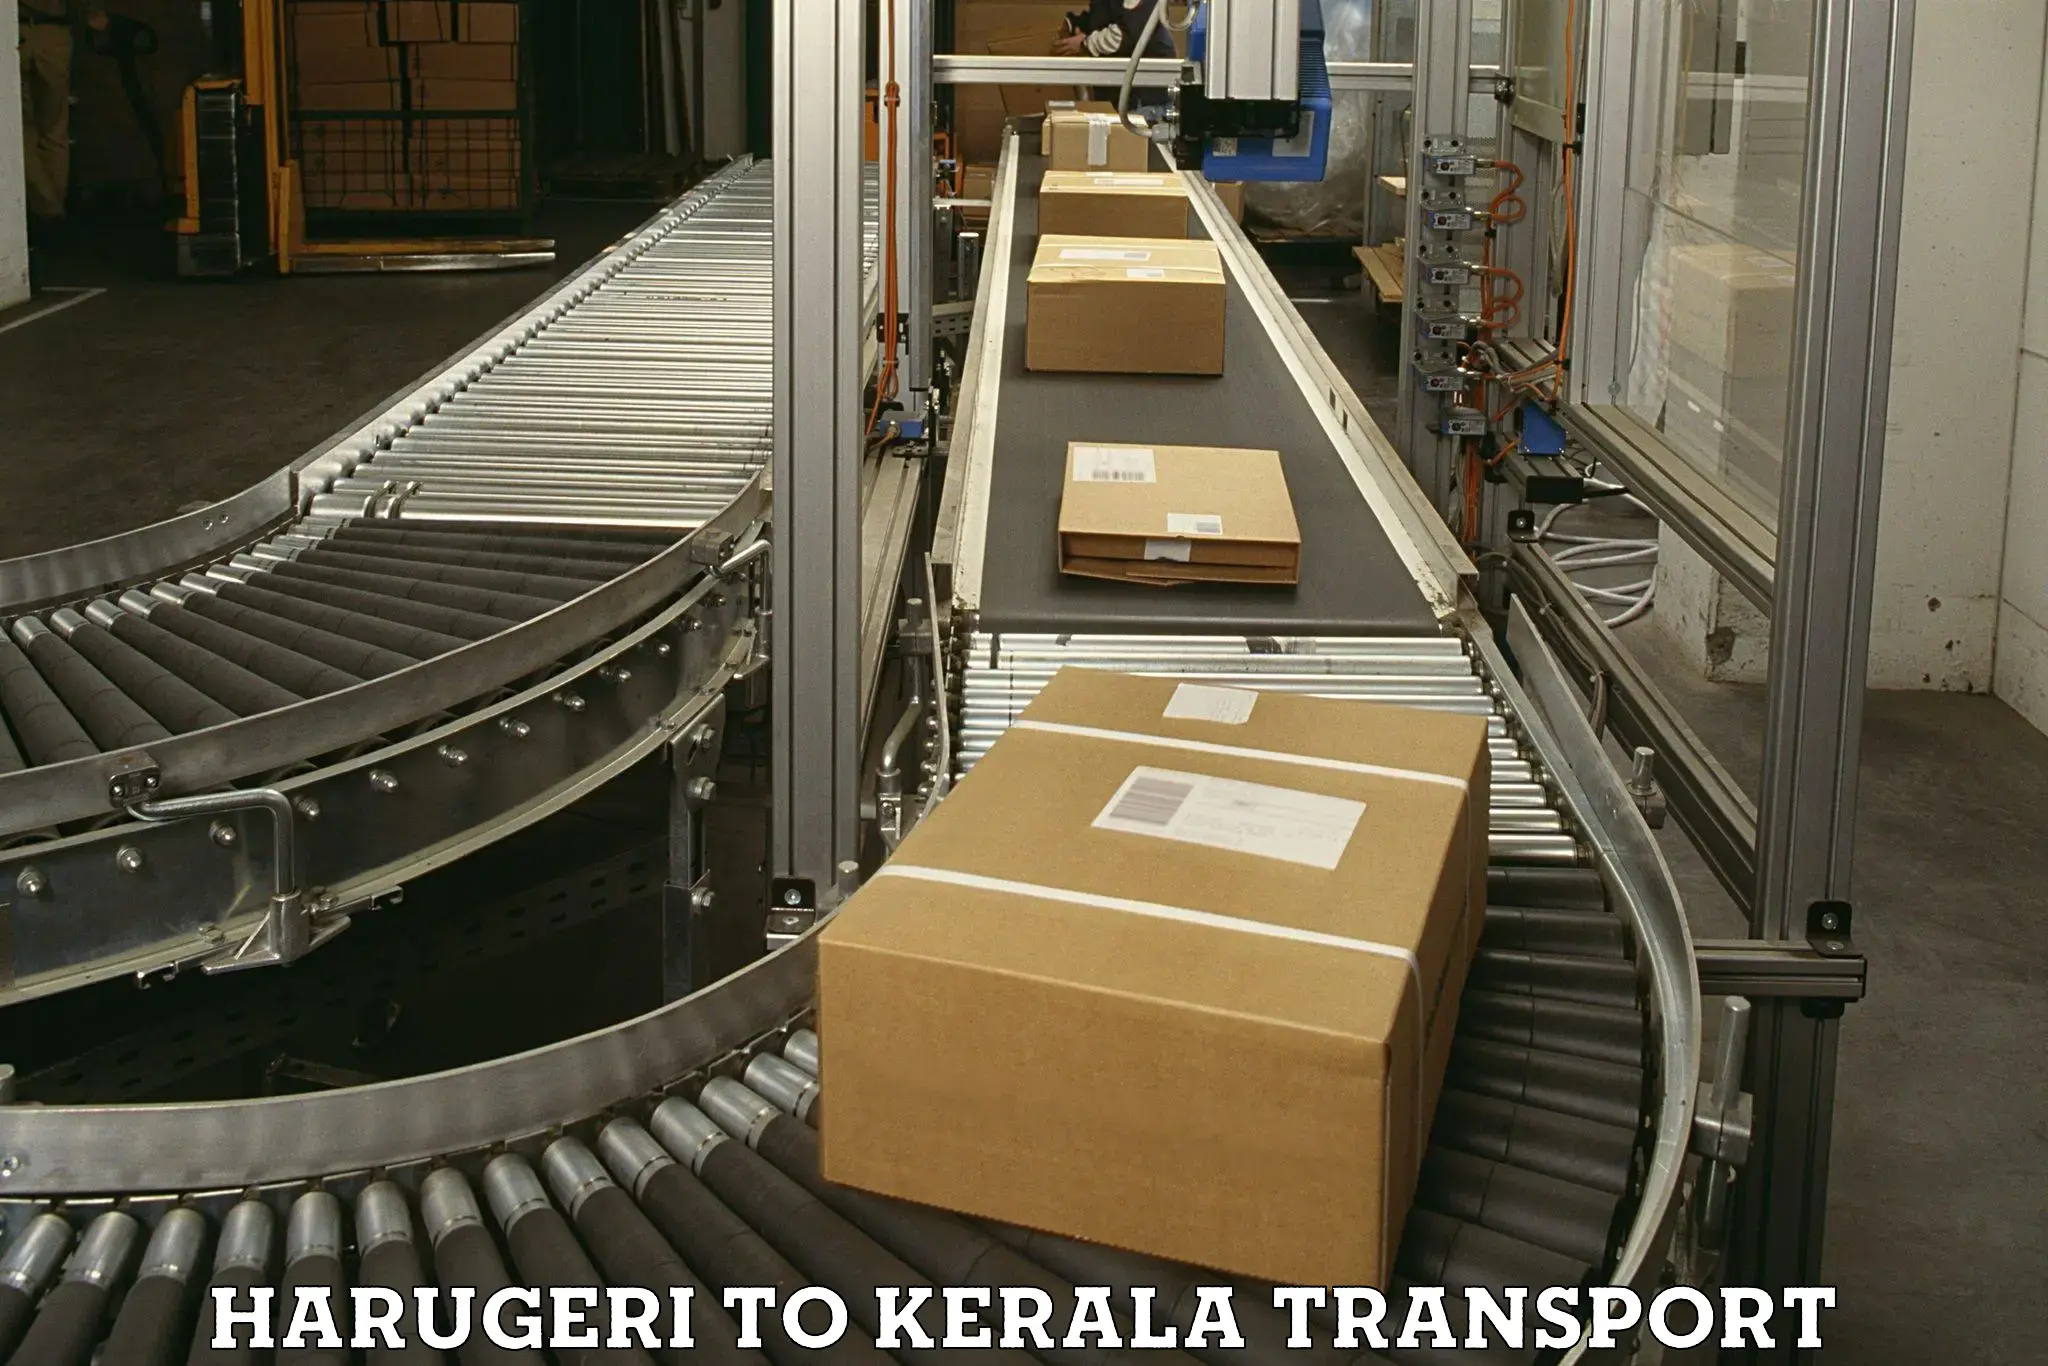 Interstate transport services Harugeri to Kozhikode